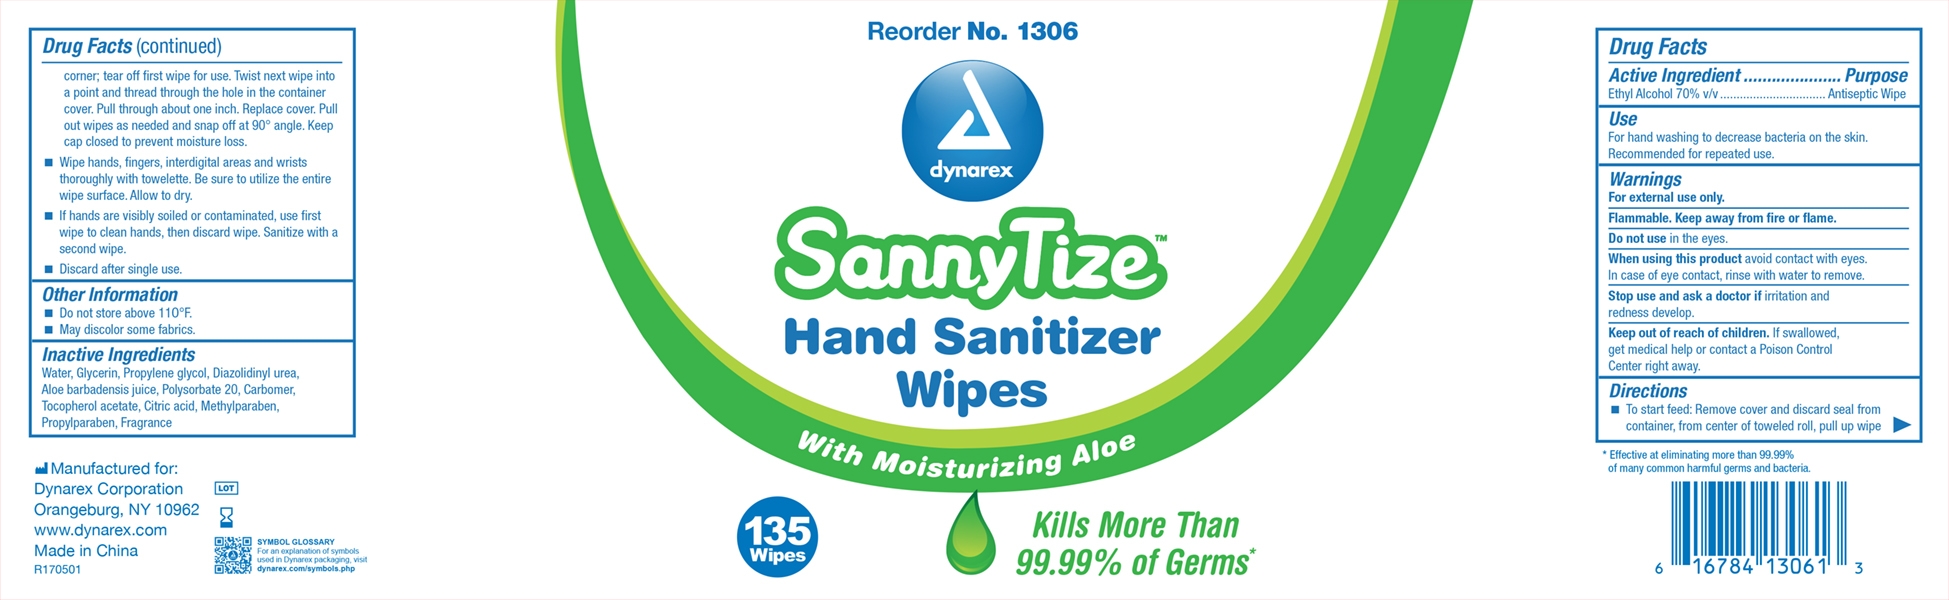 hand sanitizer wipe